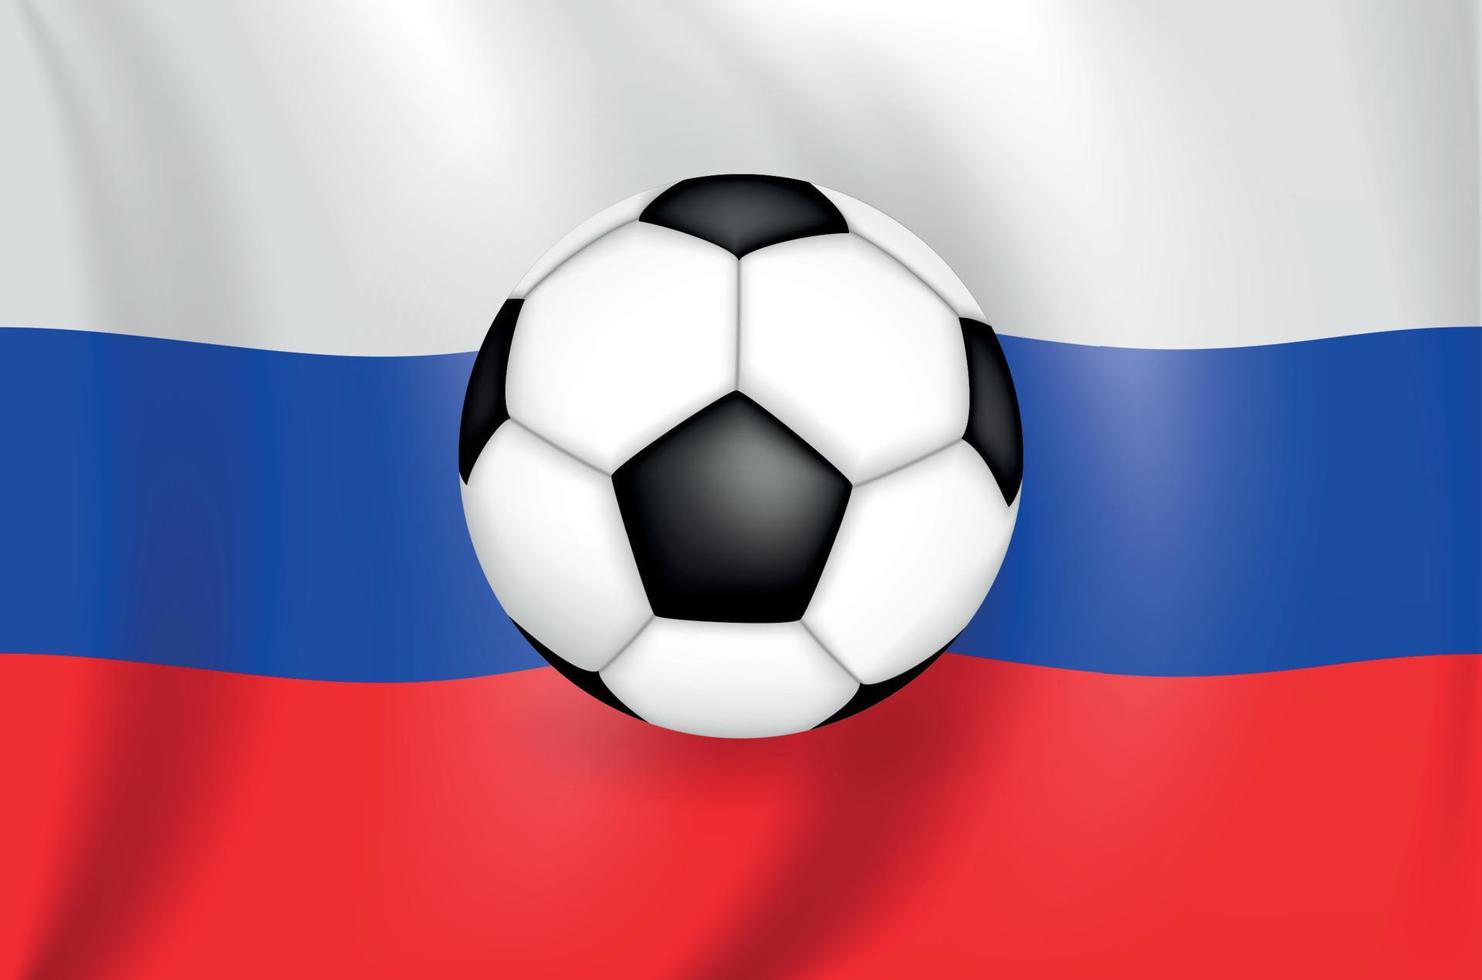 realistische 3D-tekening vlag wit-blauw-rood van de Russische federatie met een voetbal van zwart-witte kleur vector